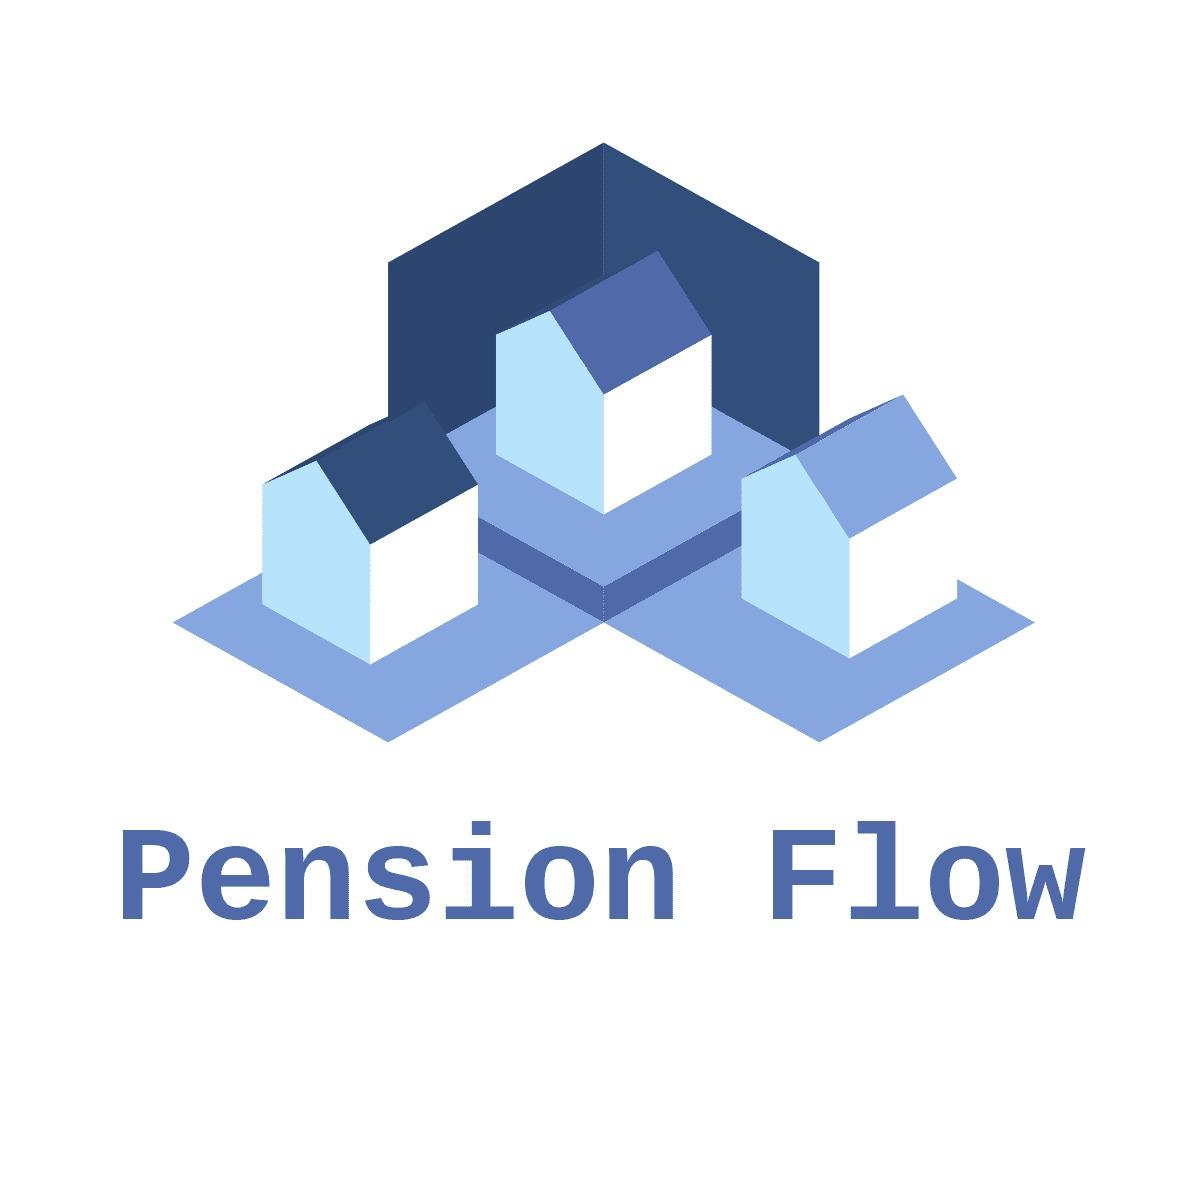 Pension Flow